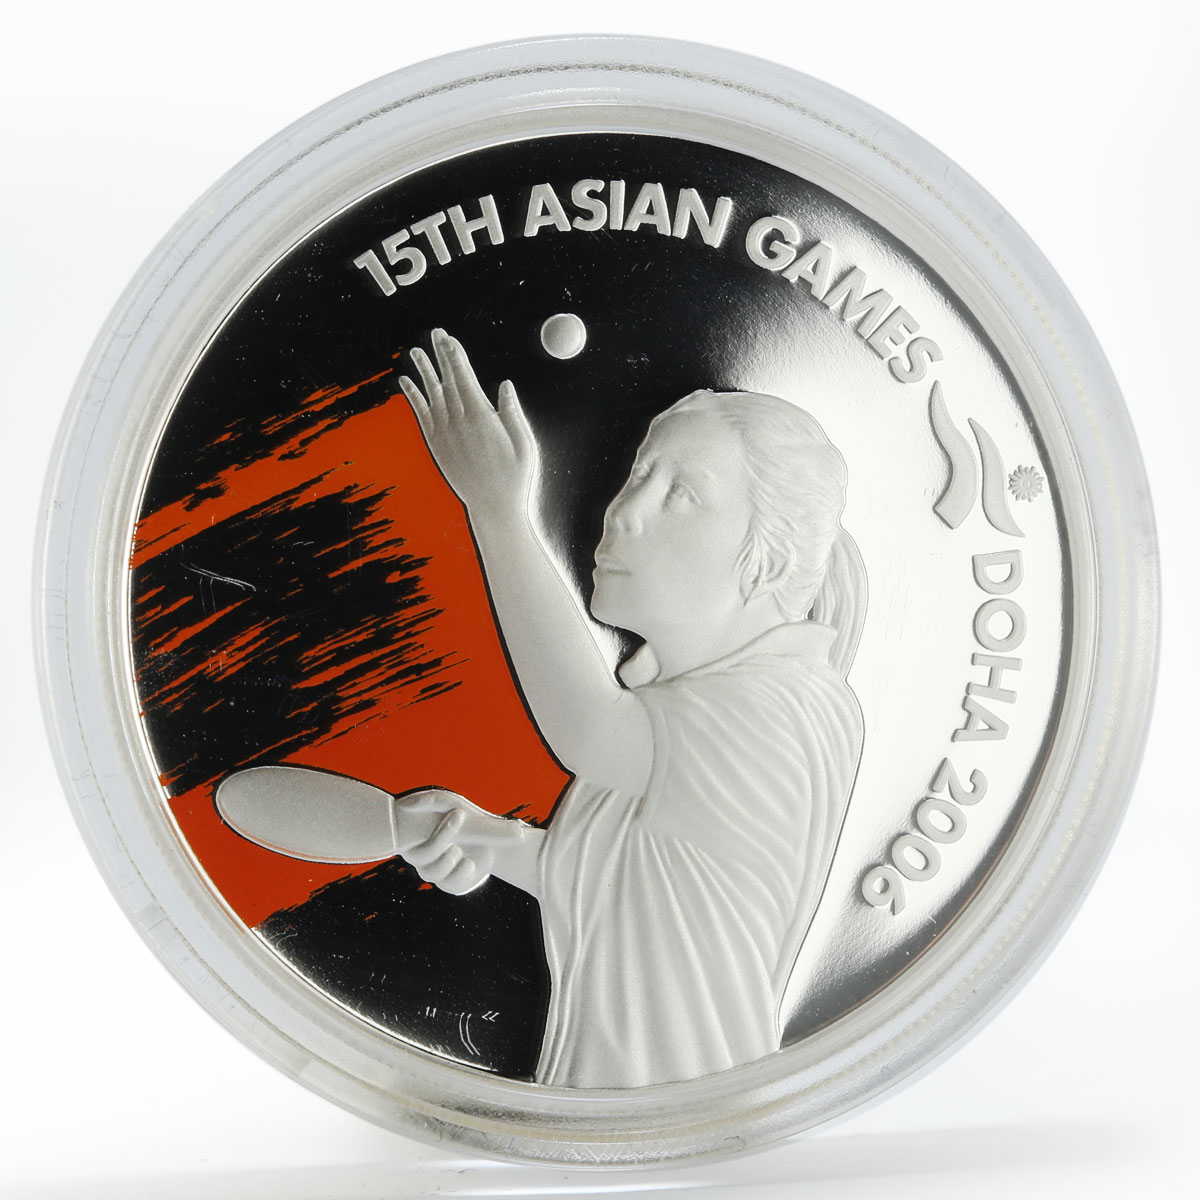 Qatar 10 riyals Asian Games Tennis proof silver coin 2006